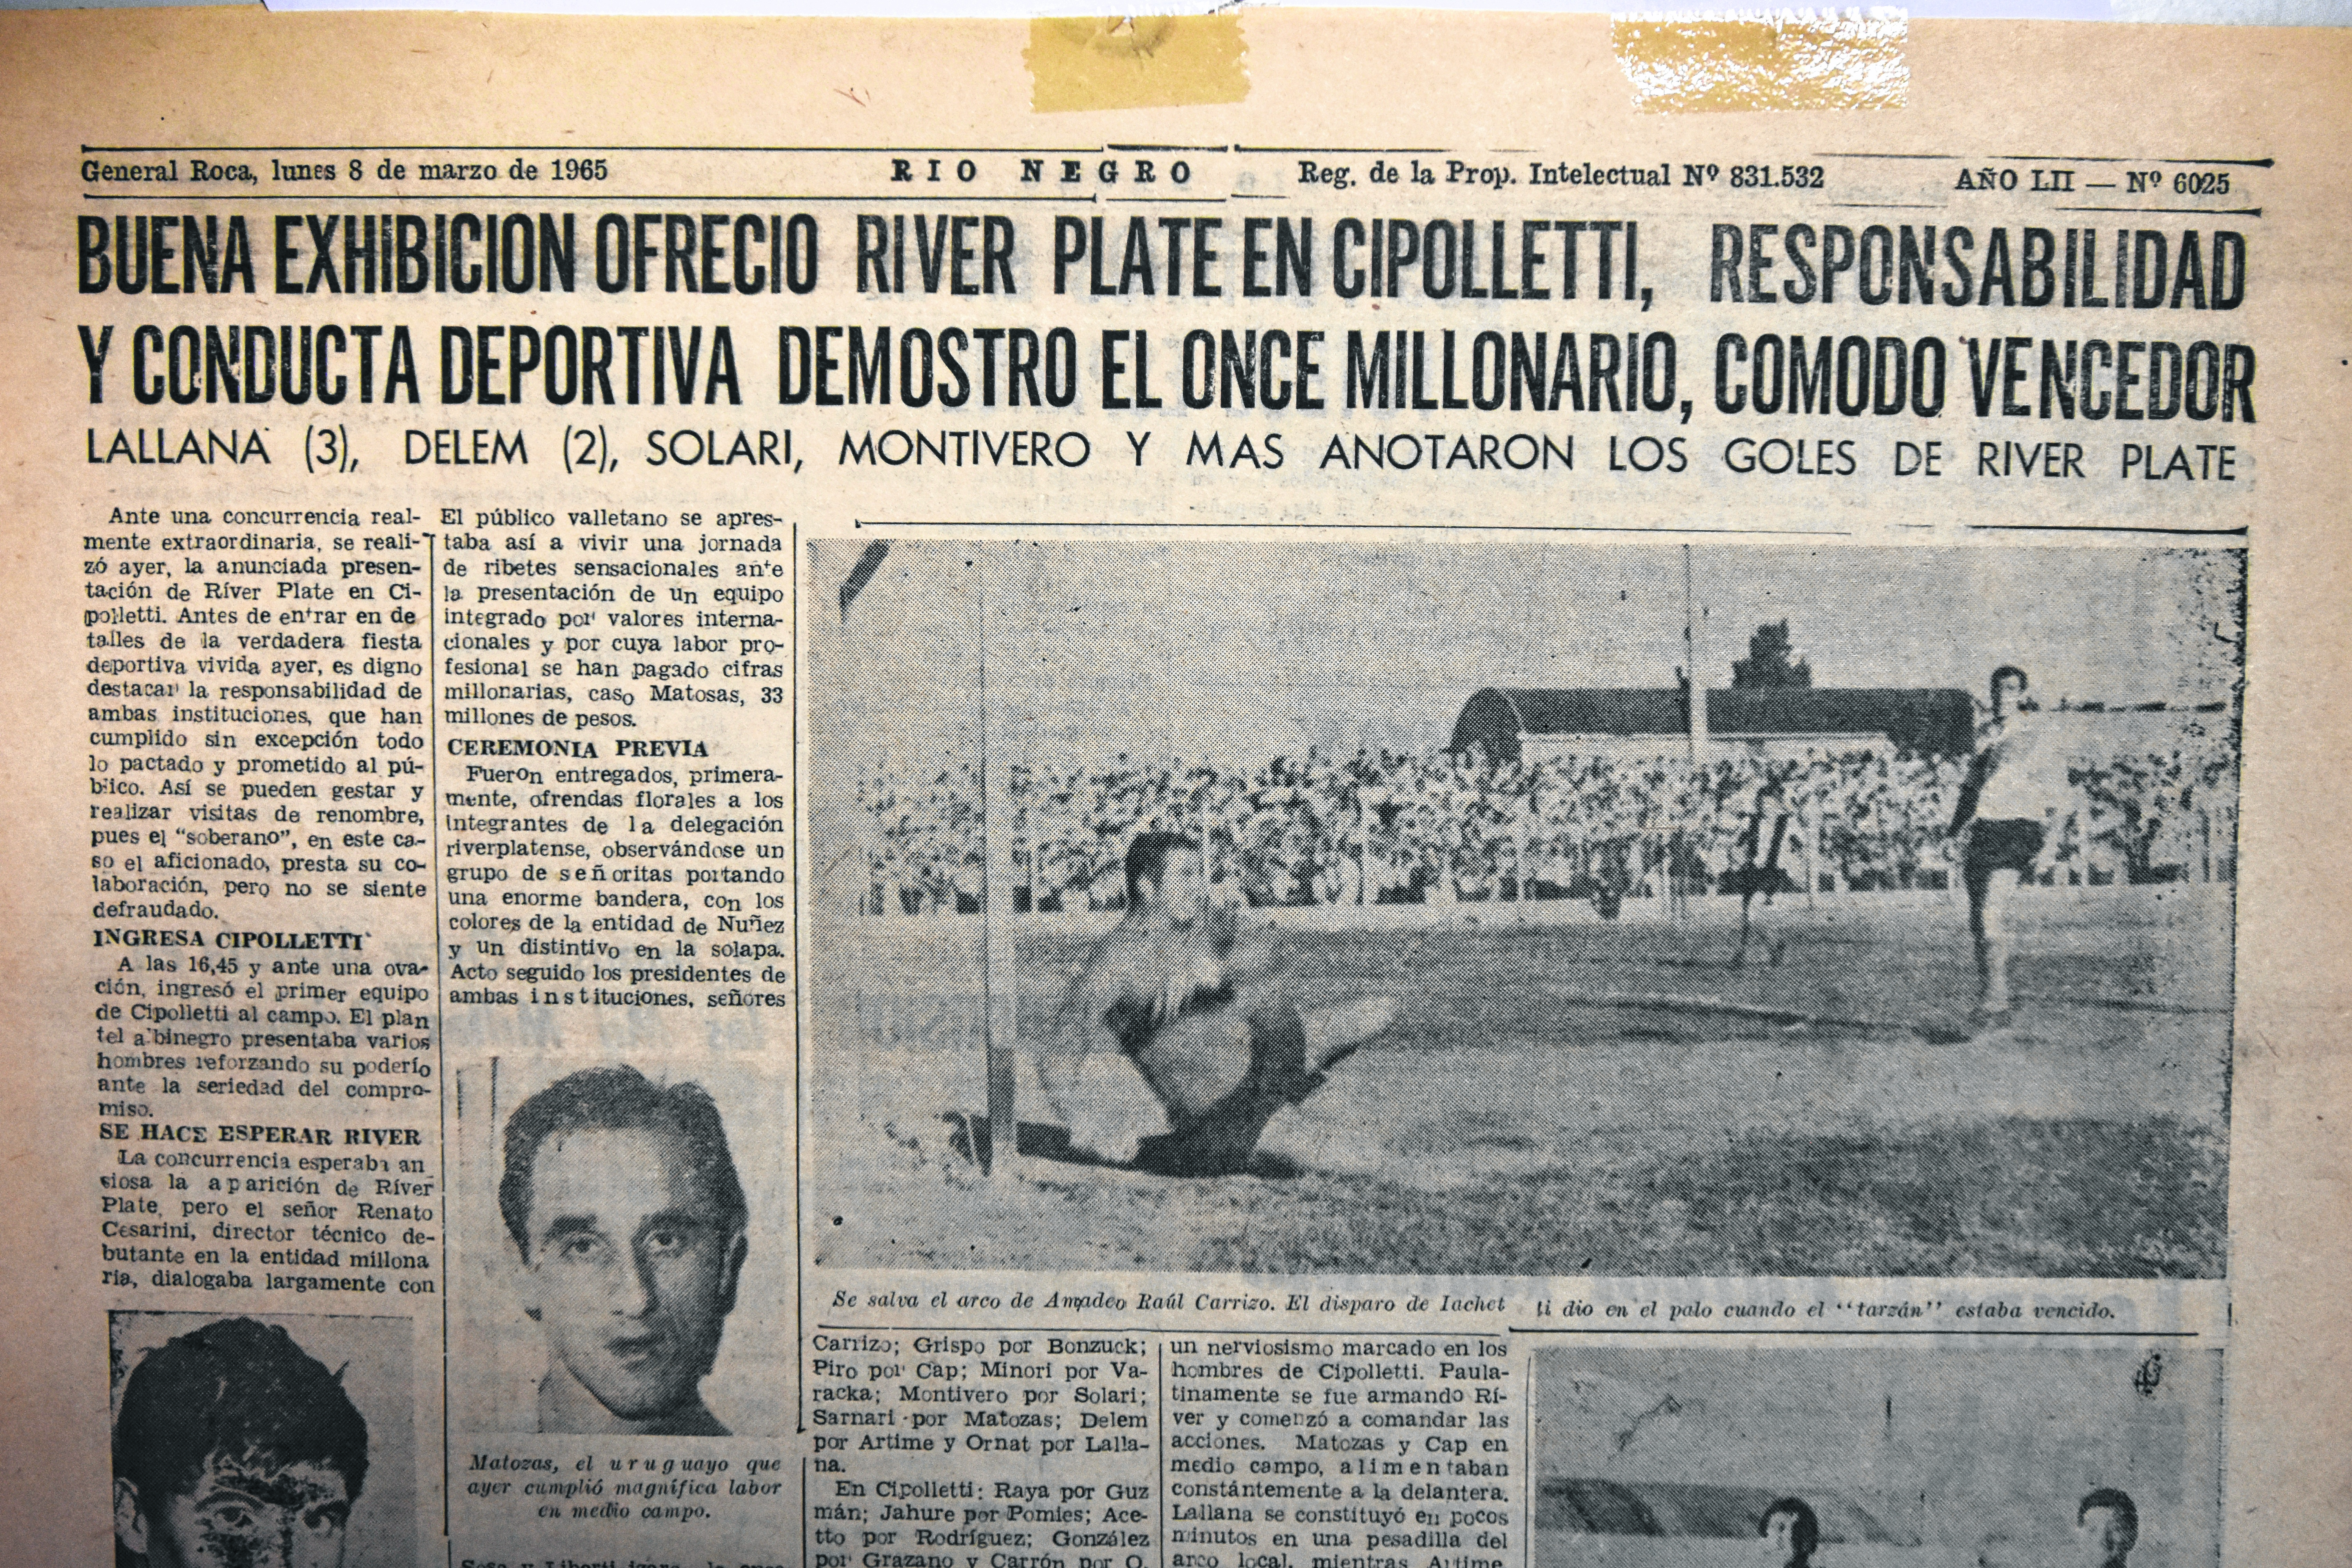 El artículo que publicó “Río Negro” el 8 de marzo de 1965. En la foto, Amadeo vuela ante un disparo de Iachetti.